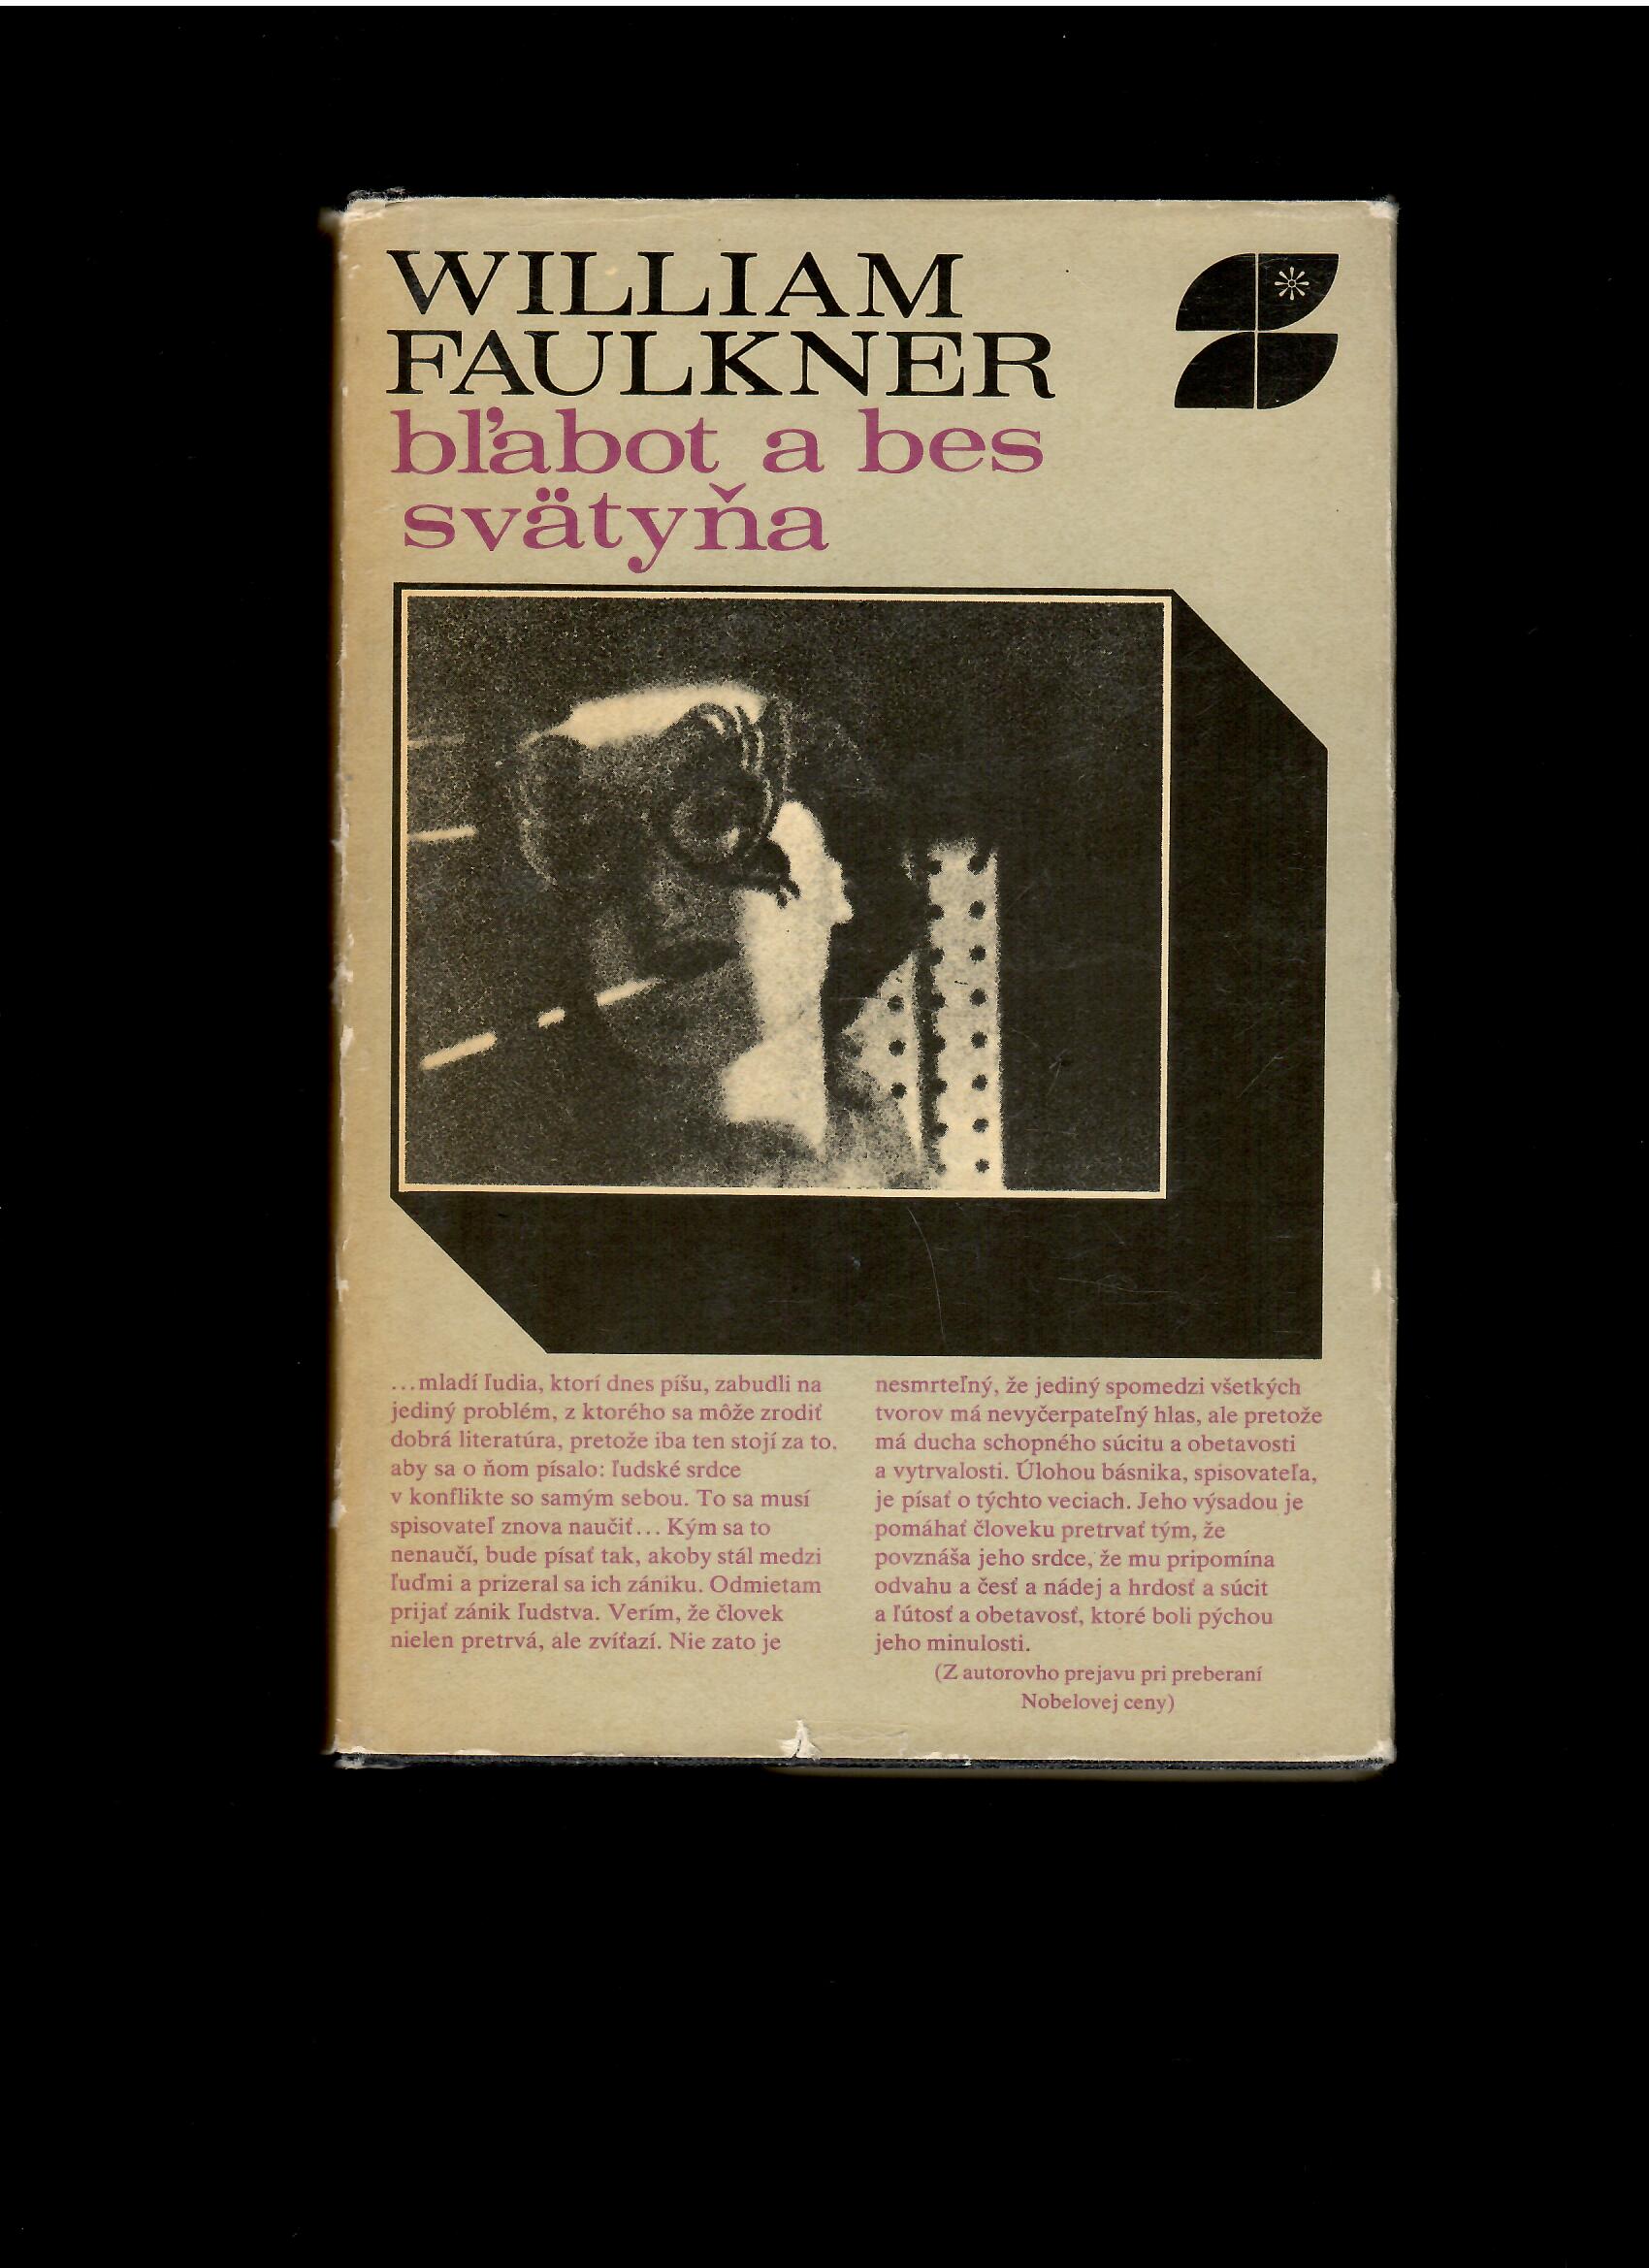 William Faulkner: Bľabot a bes, Svätyňa